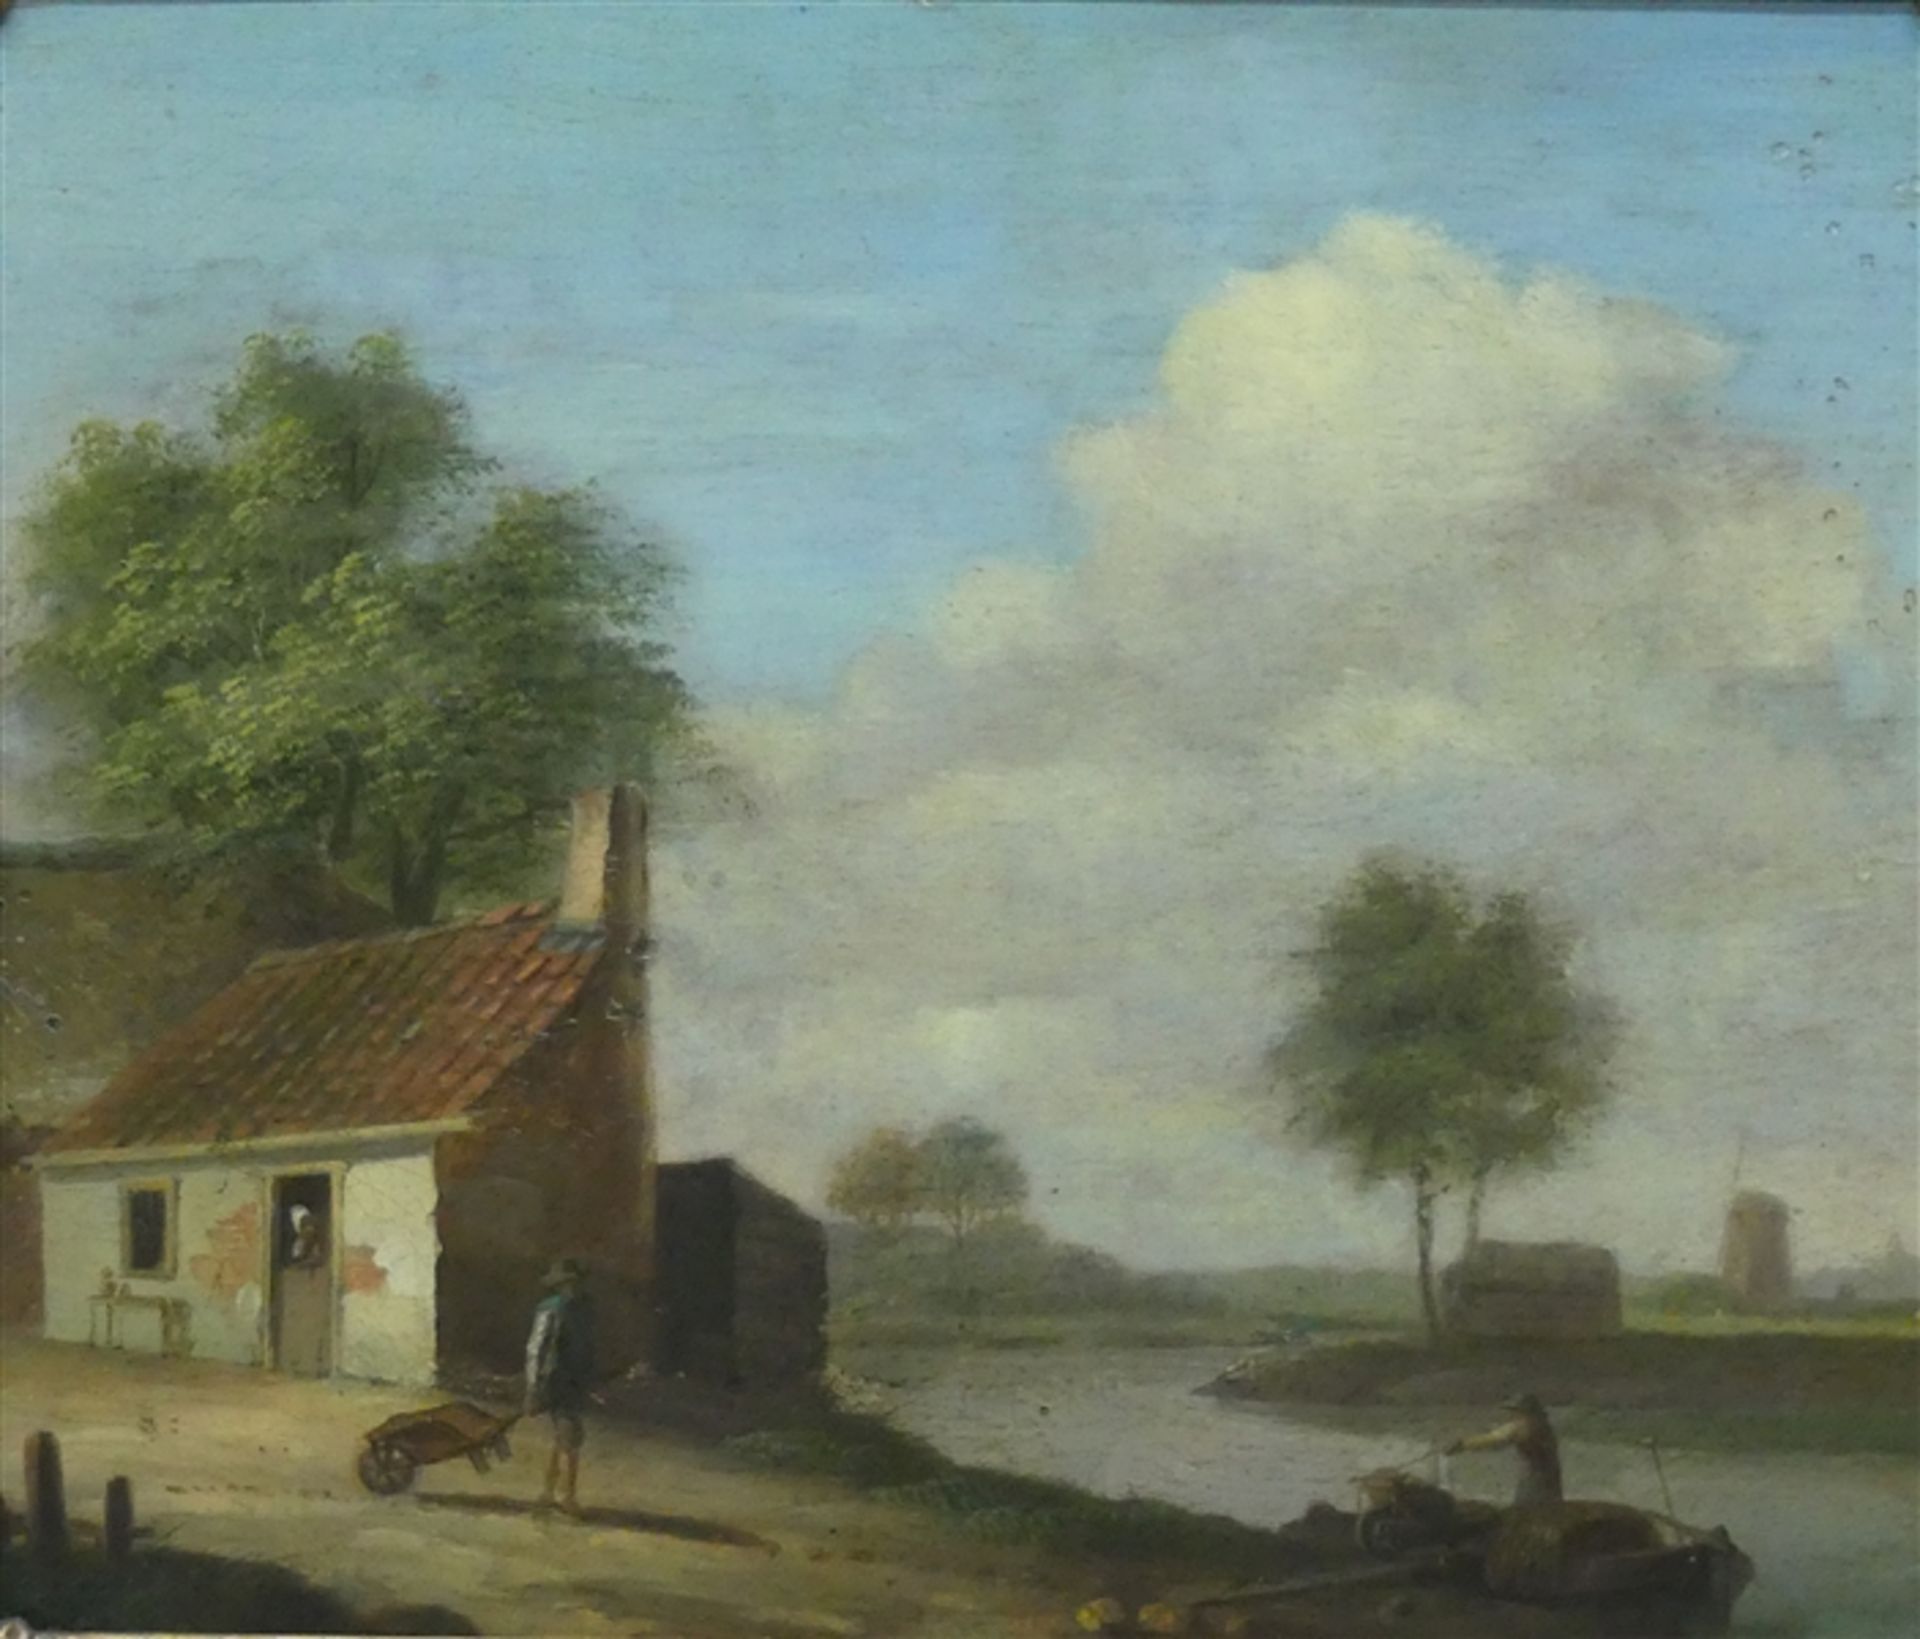 Holland, um 1800Öl auf Holz, Flußlandschaft mit Boot, im Vordergrund ein Bauernhaus mit Bauer und